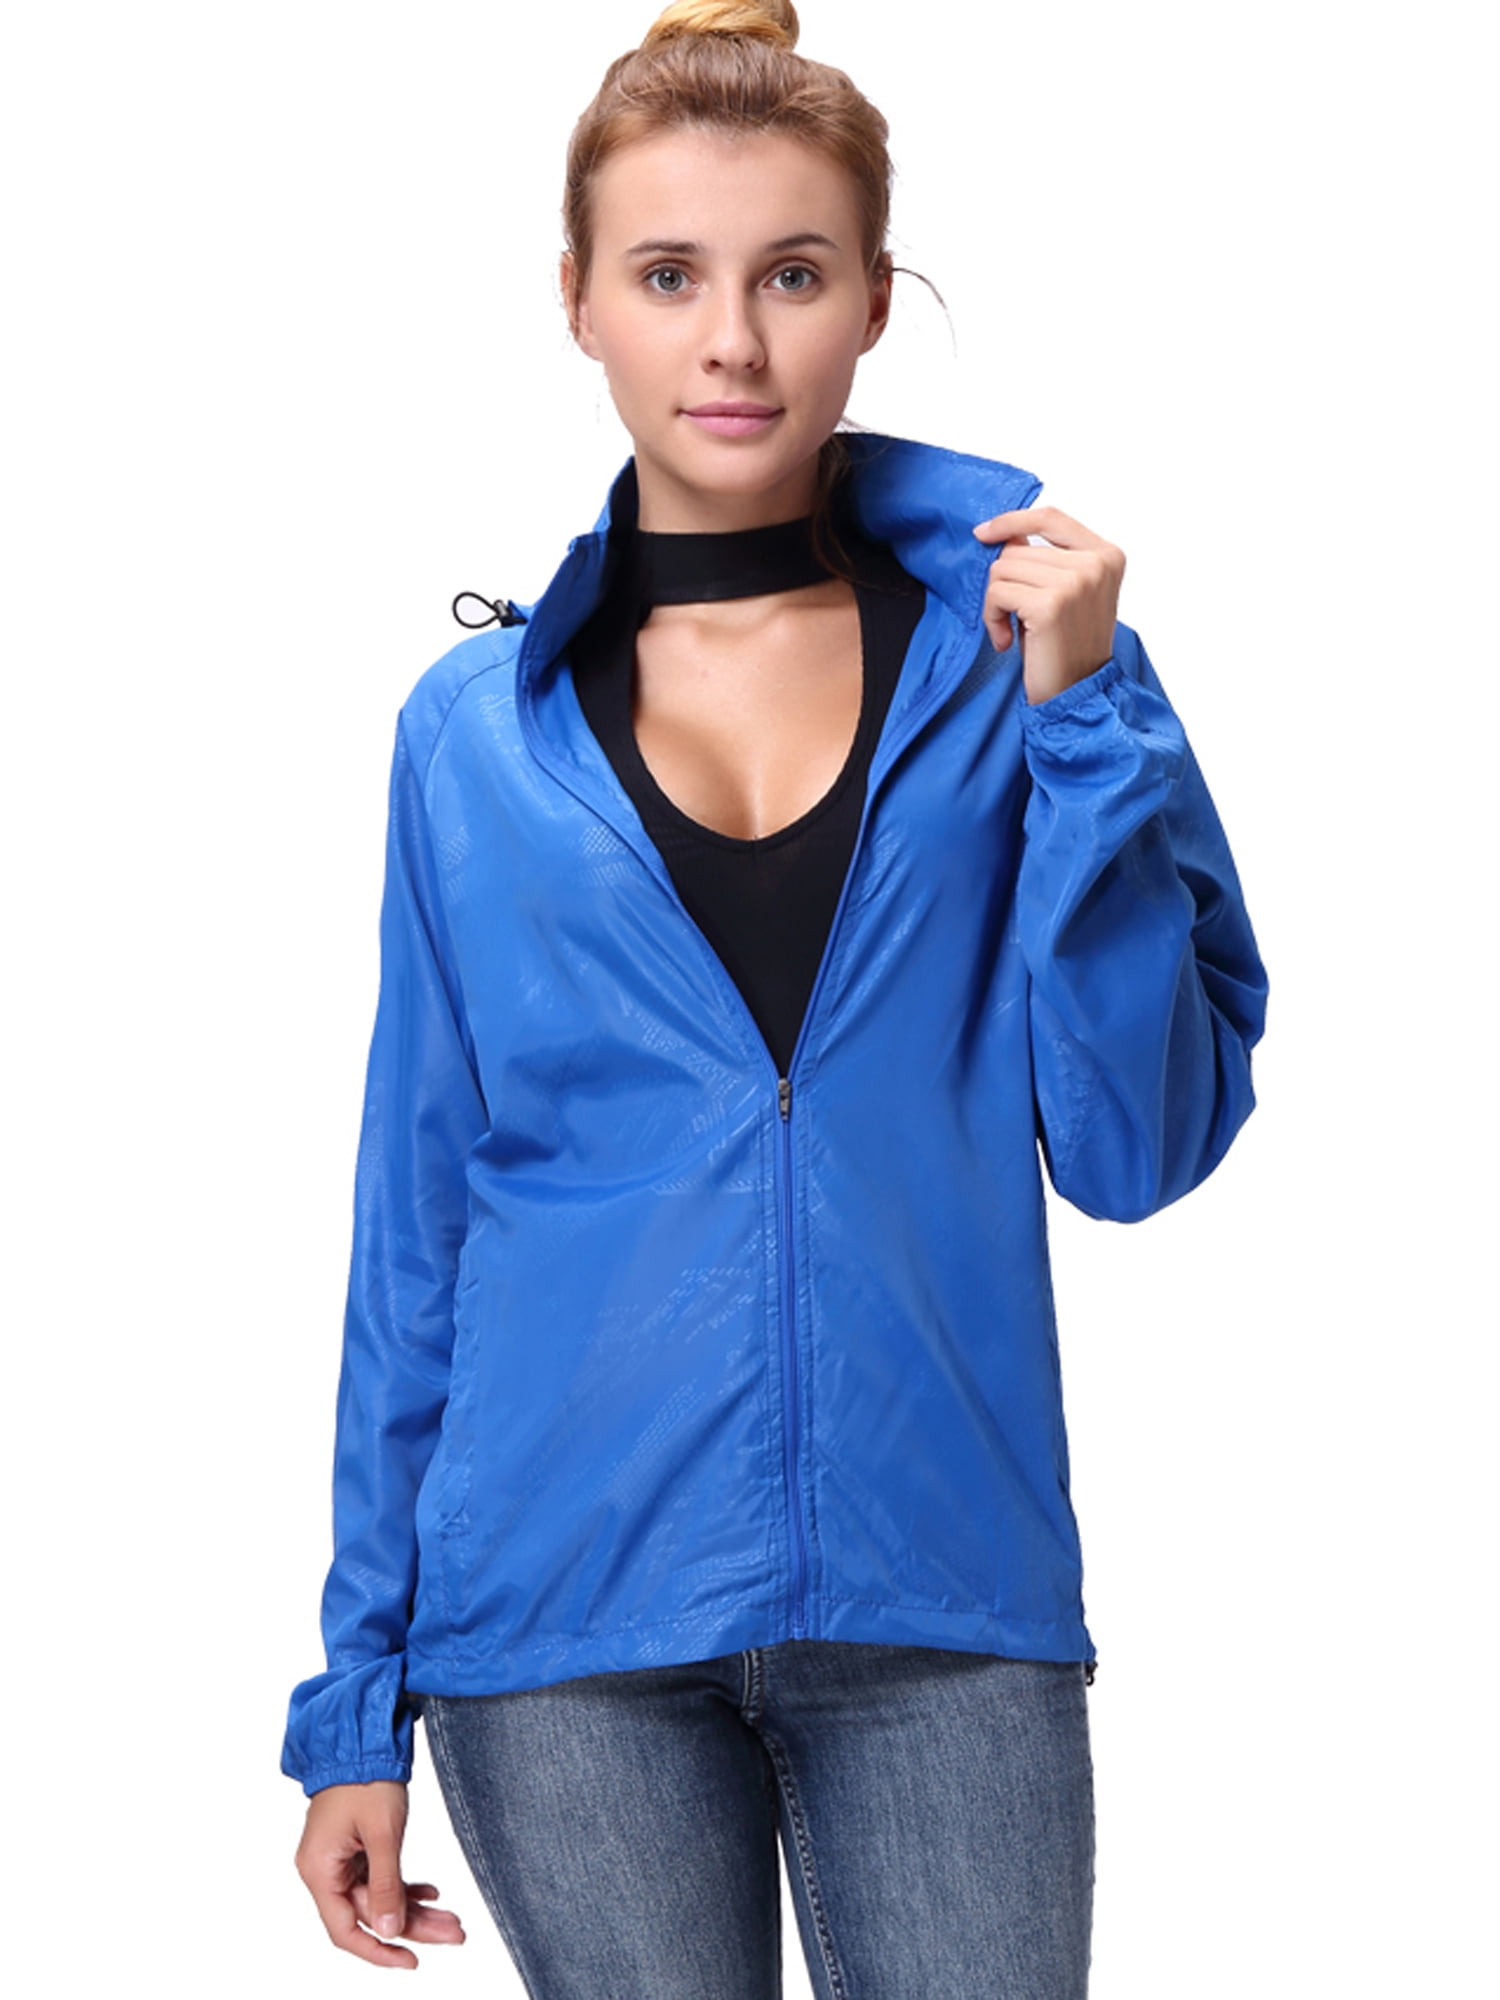 Dodoing - DODOING Men's and Women's Front-Zip Hooded Rain Jacket Ultra ...